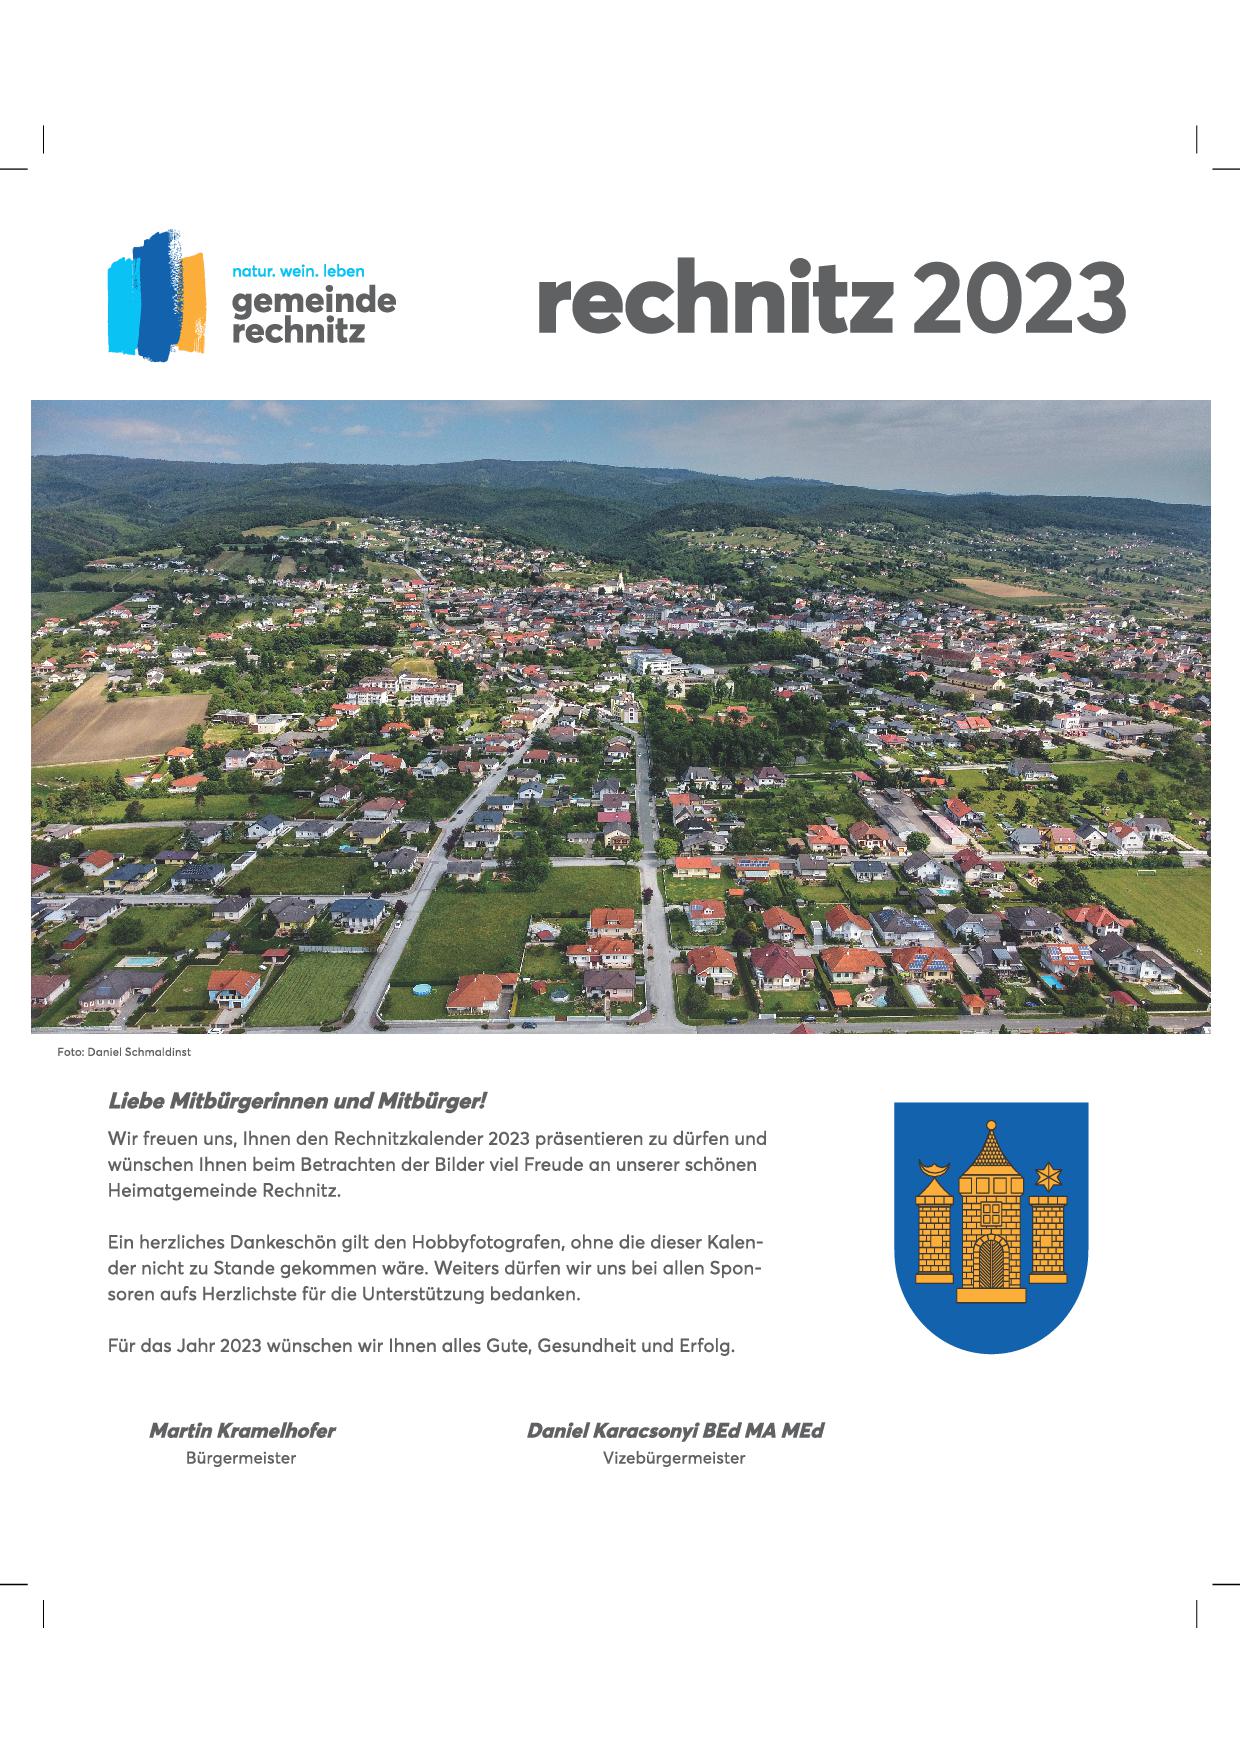 RechnitzKalender 2023 Gemeinde Rechnitz